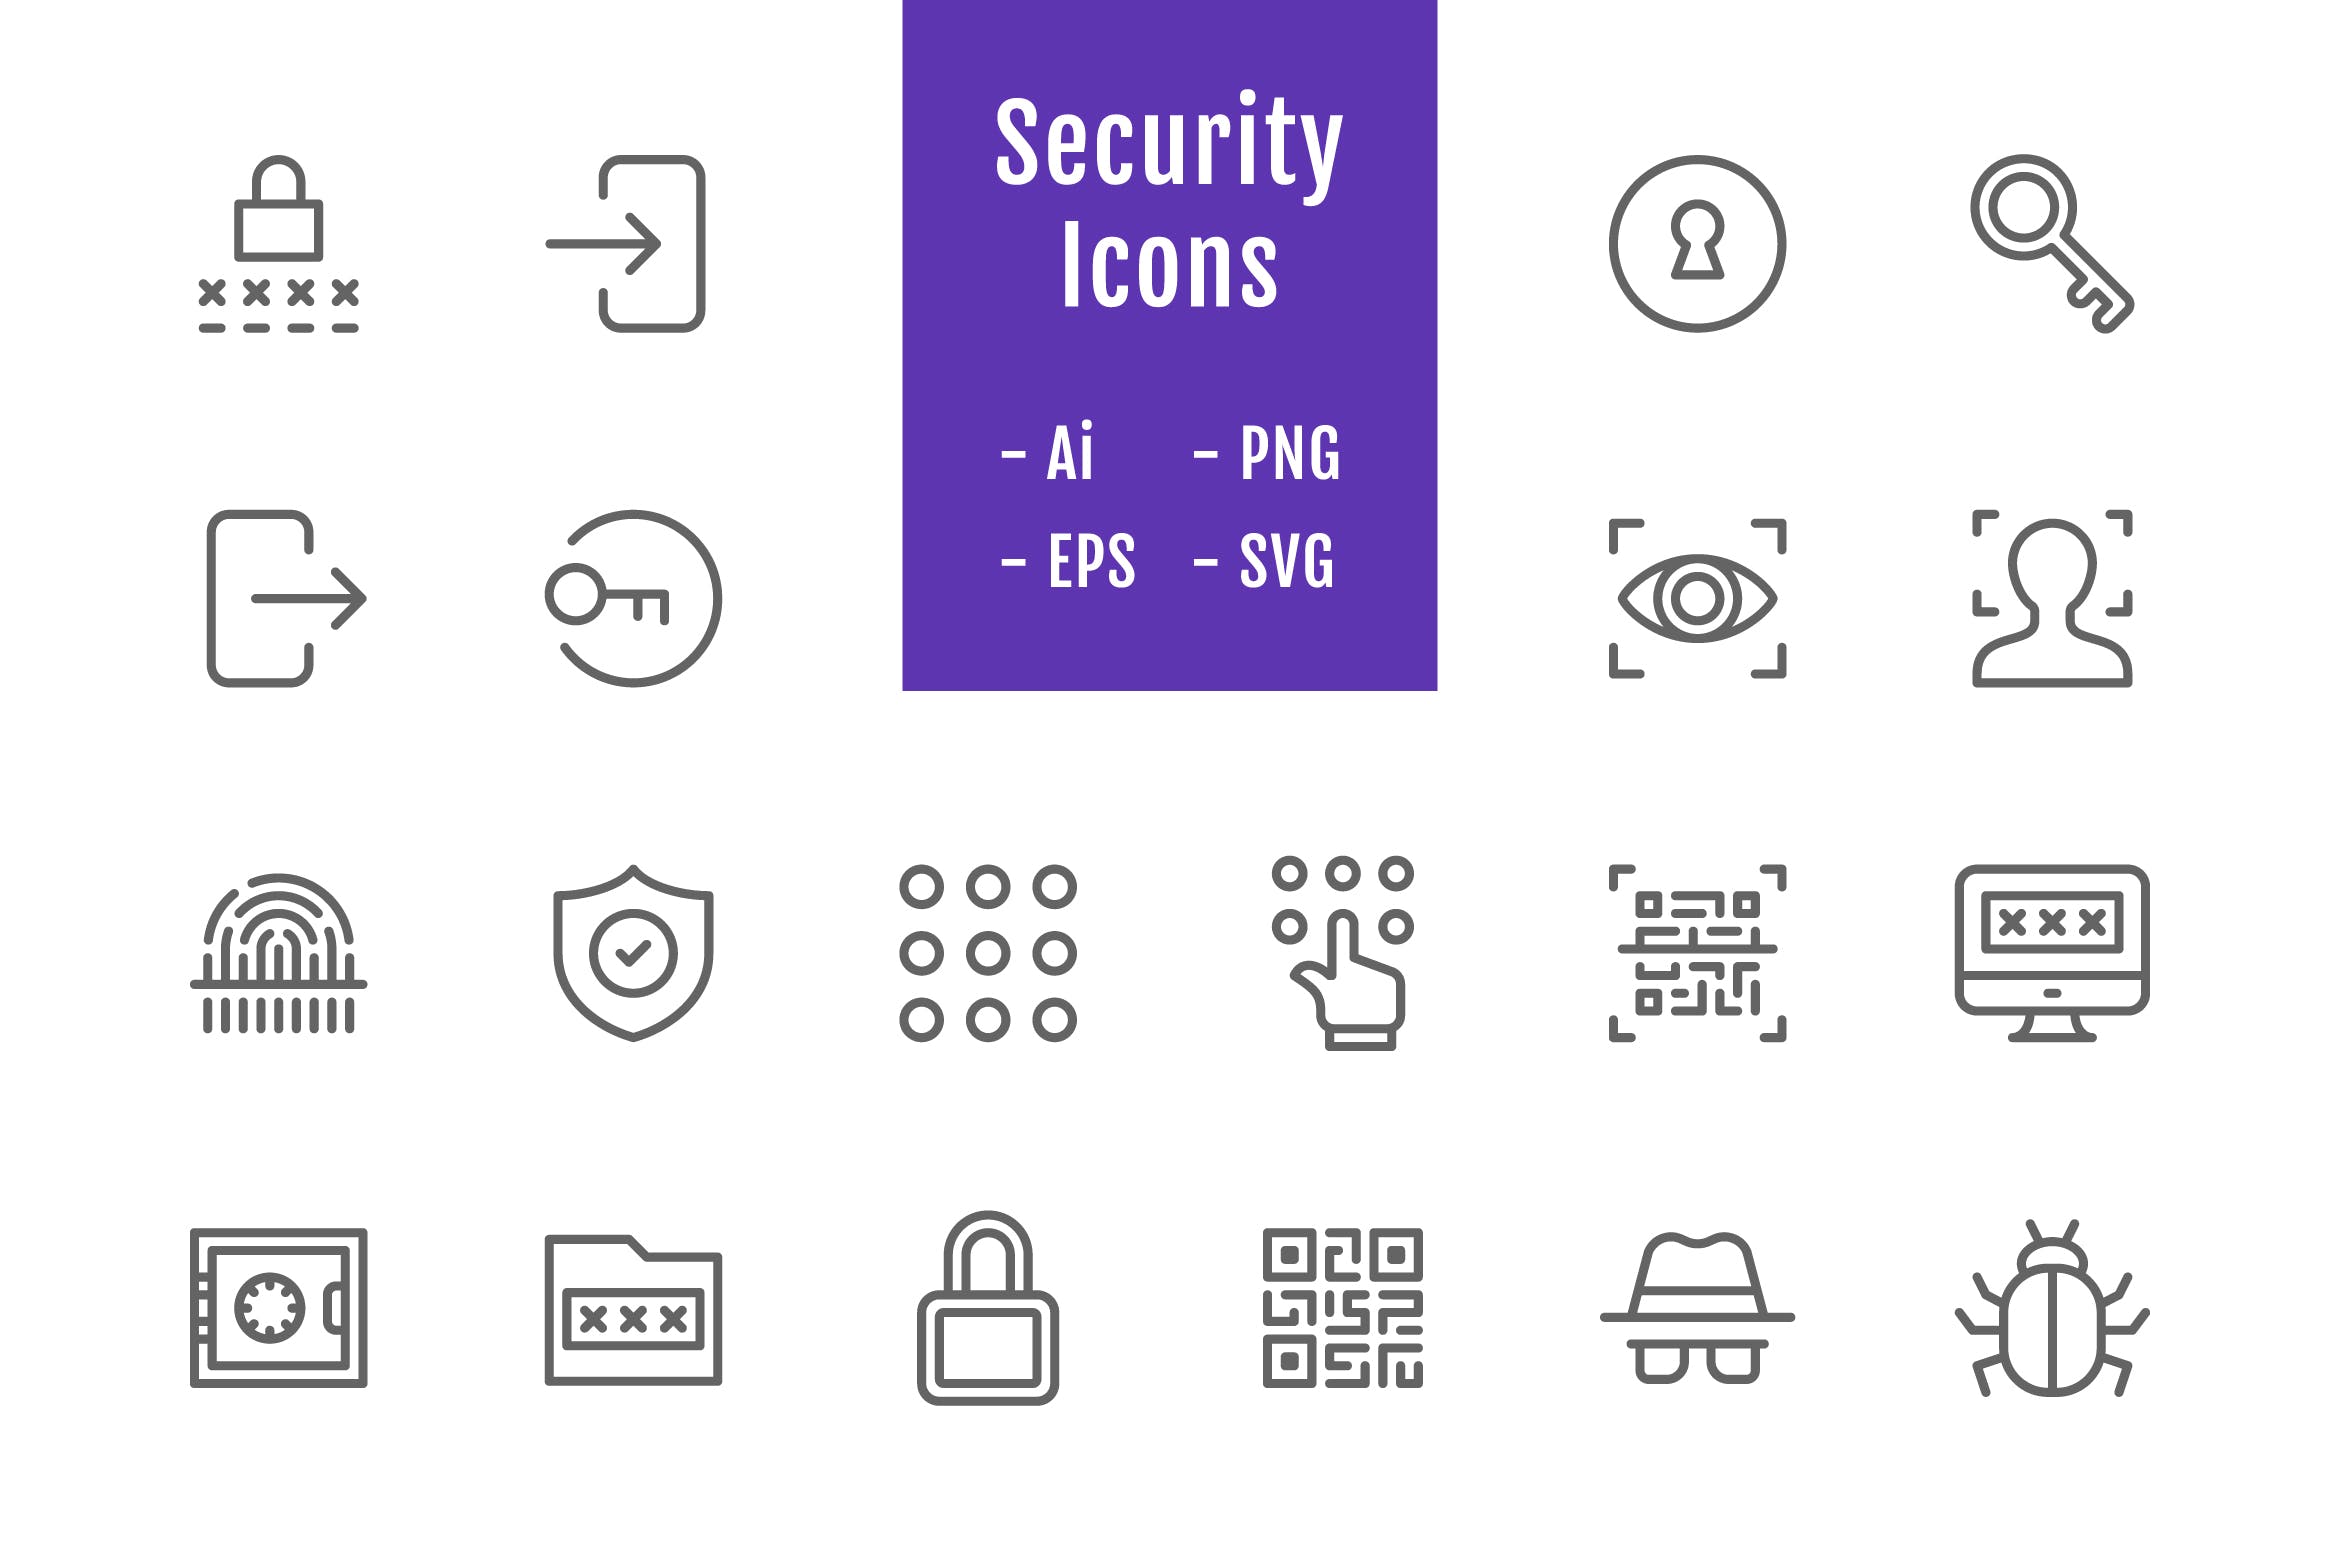 20枚信息安全主题线性矢量图标素材 20 Security Icons (Line)插图